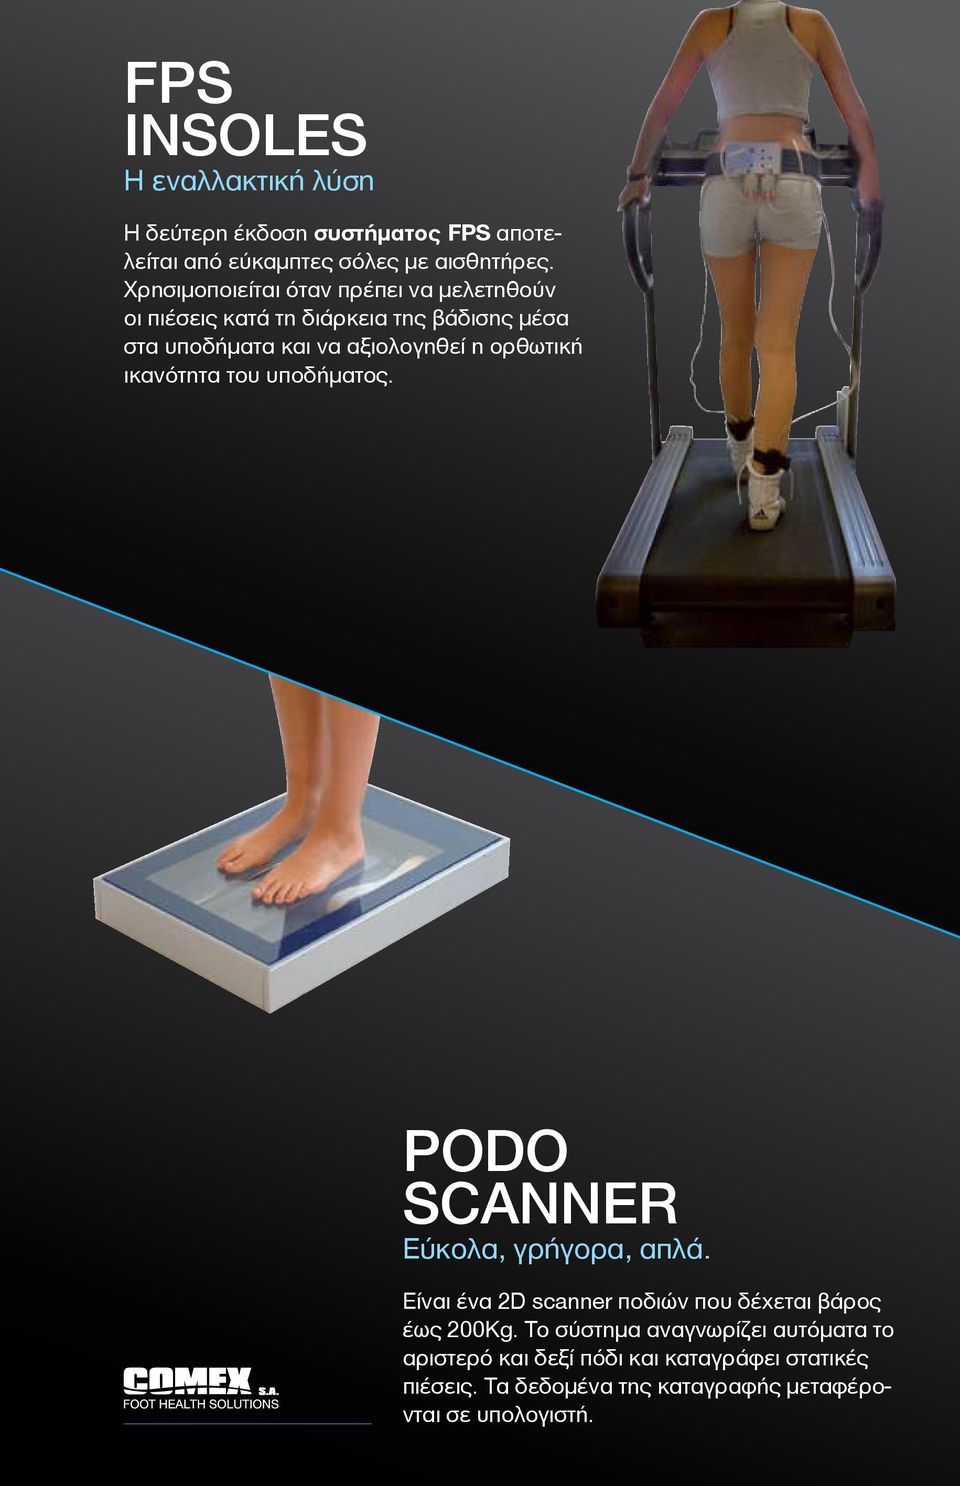 ορθωτική ικανότητα του υποδήματος. PODO SCANNER Εύκολα, γρήγορα, απλά. Είναι ένα 2D scanner ποδιών που δέχεται βάρος έως 200Kg.